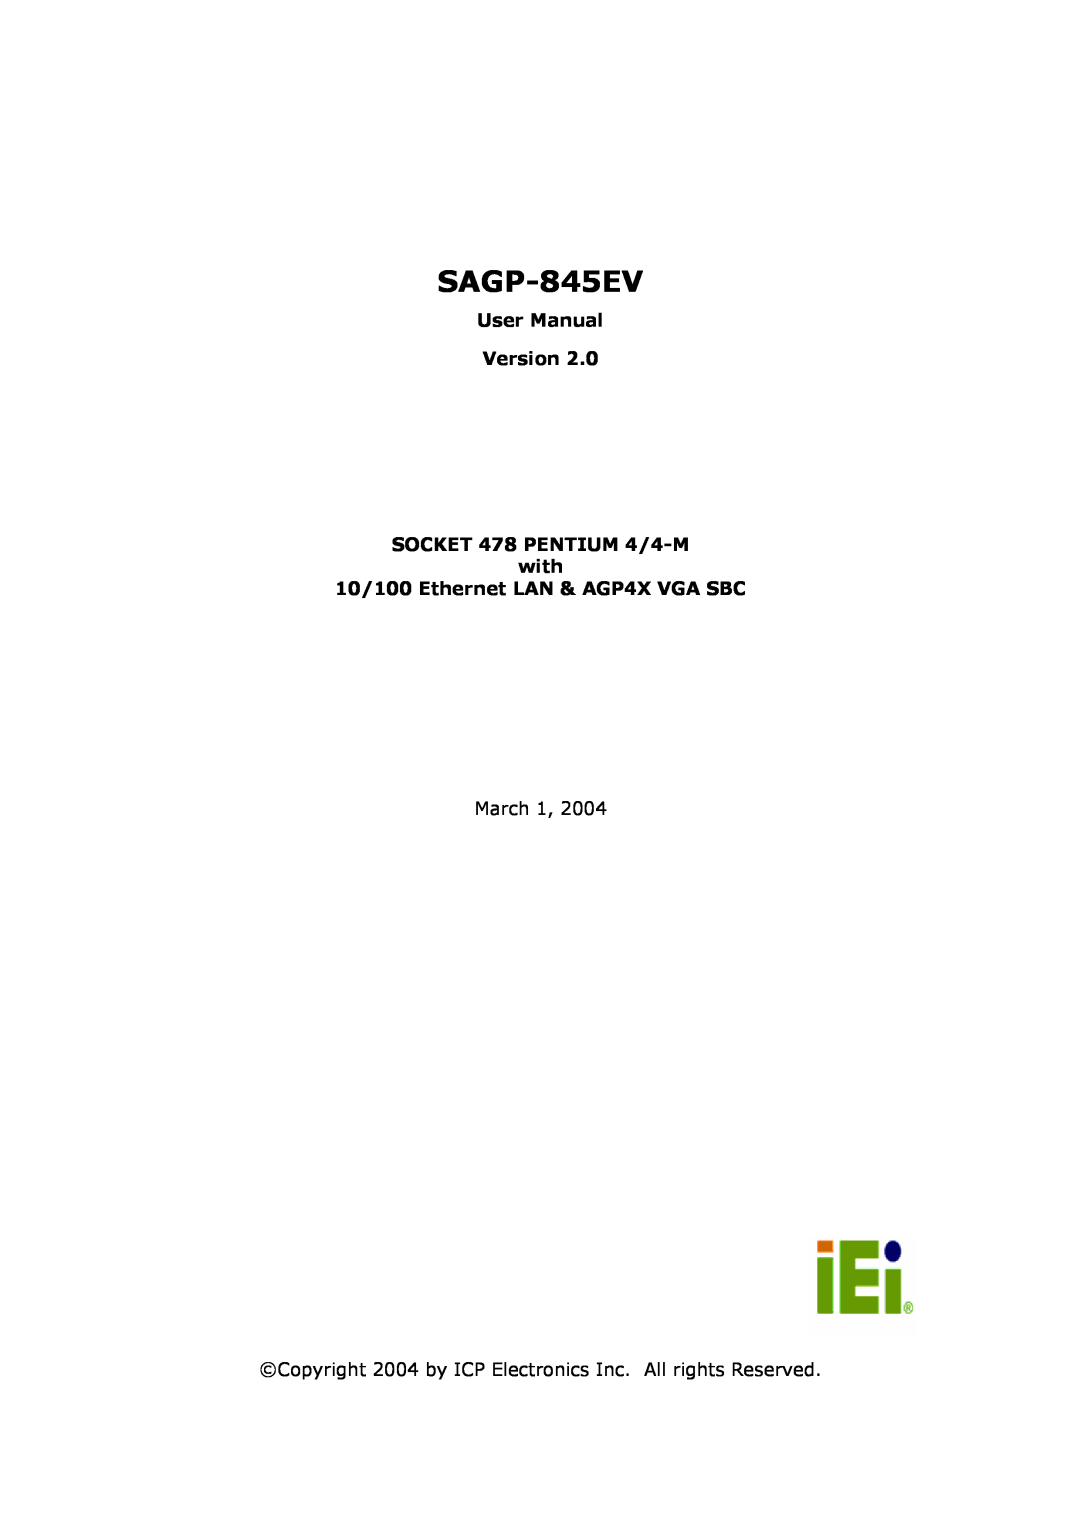 IBM SAGP-845EV user manual 10/100 Ethernet LAN & AGP4X VGA SBC 